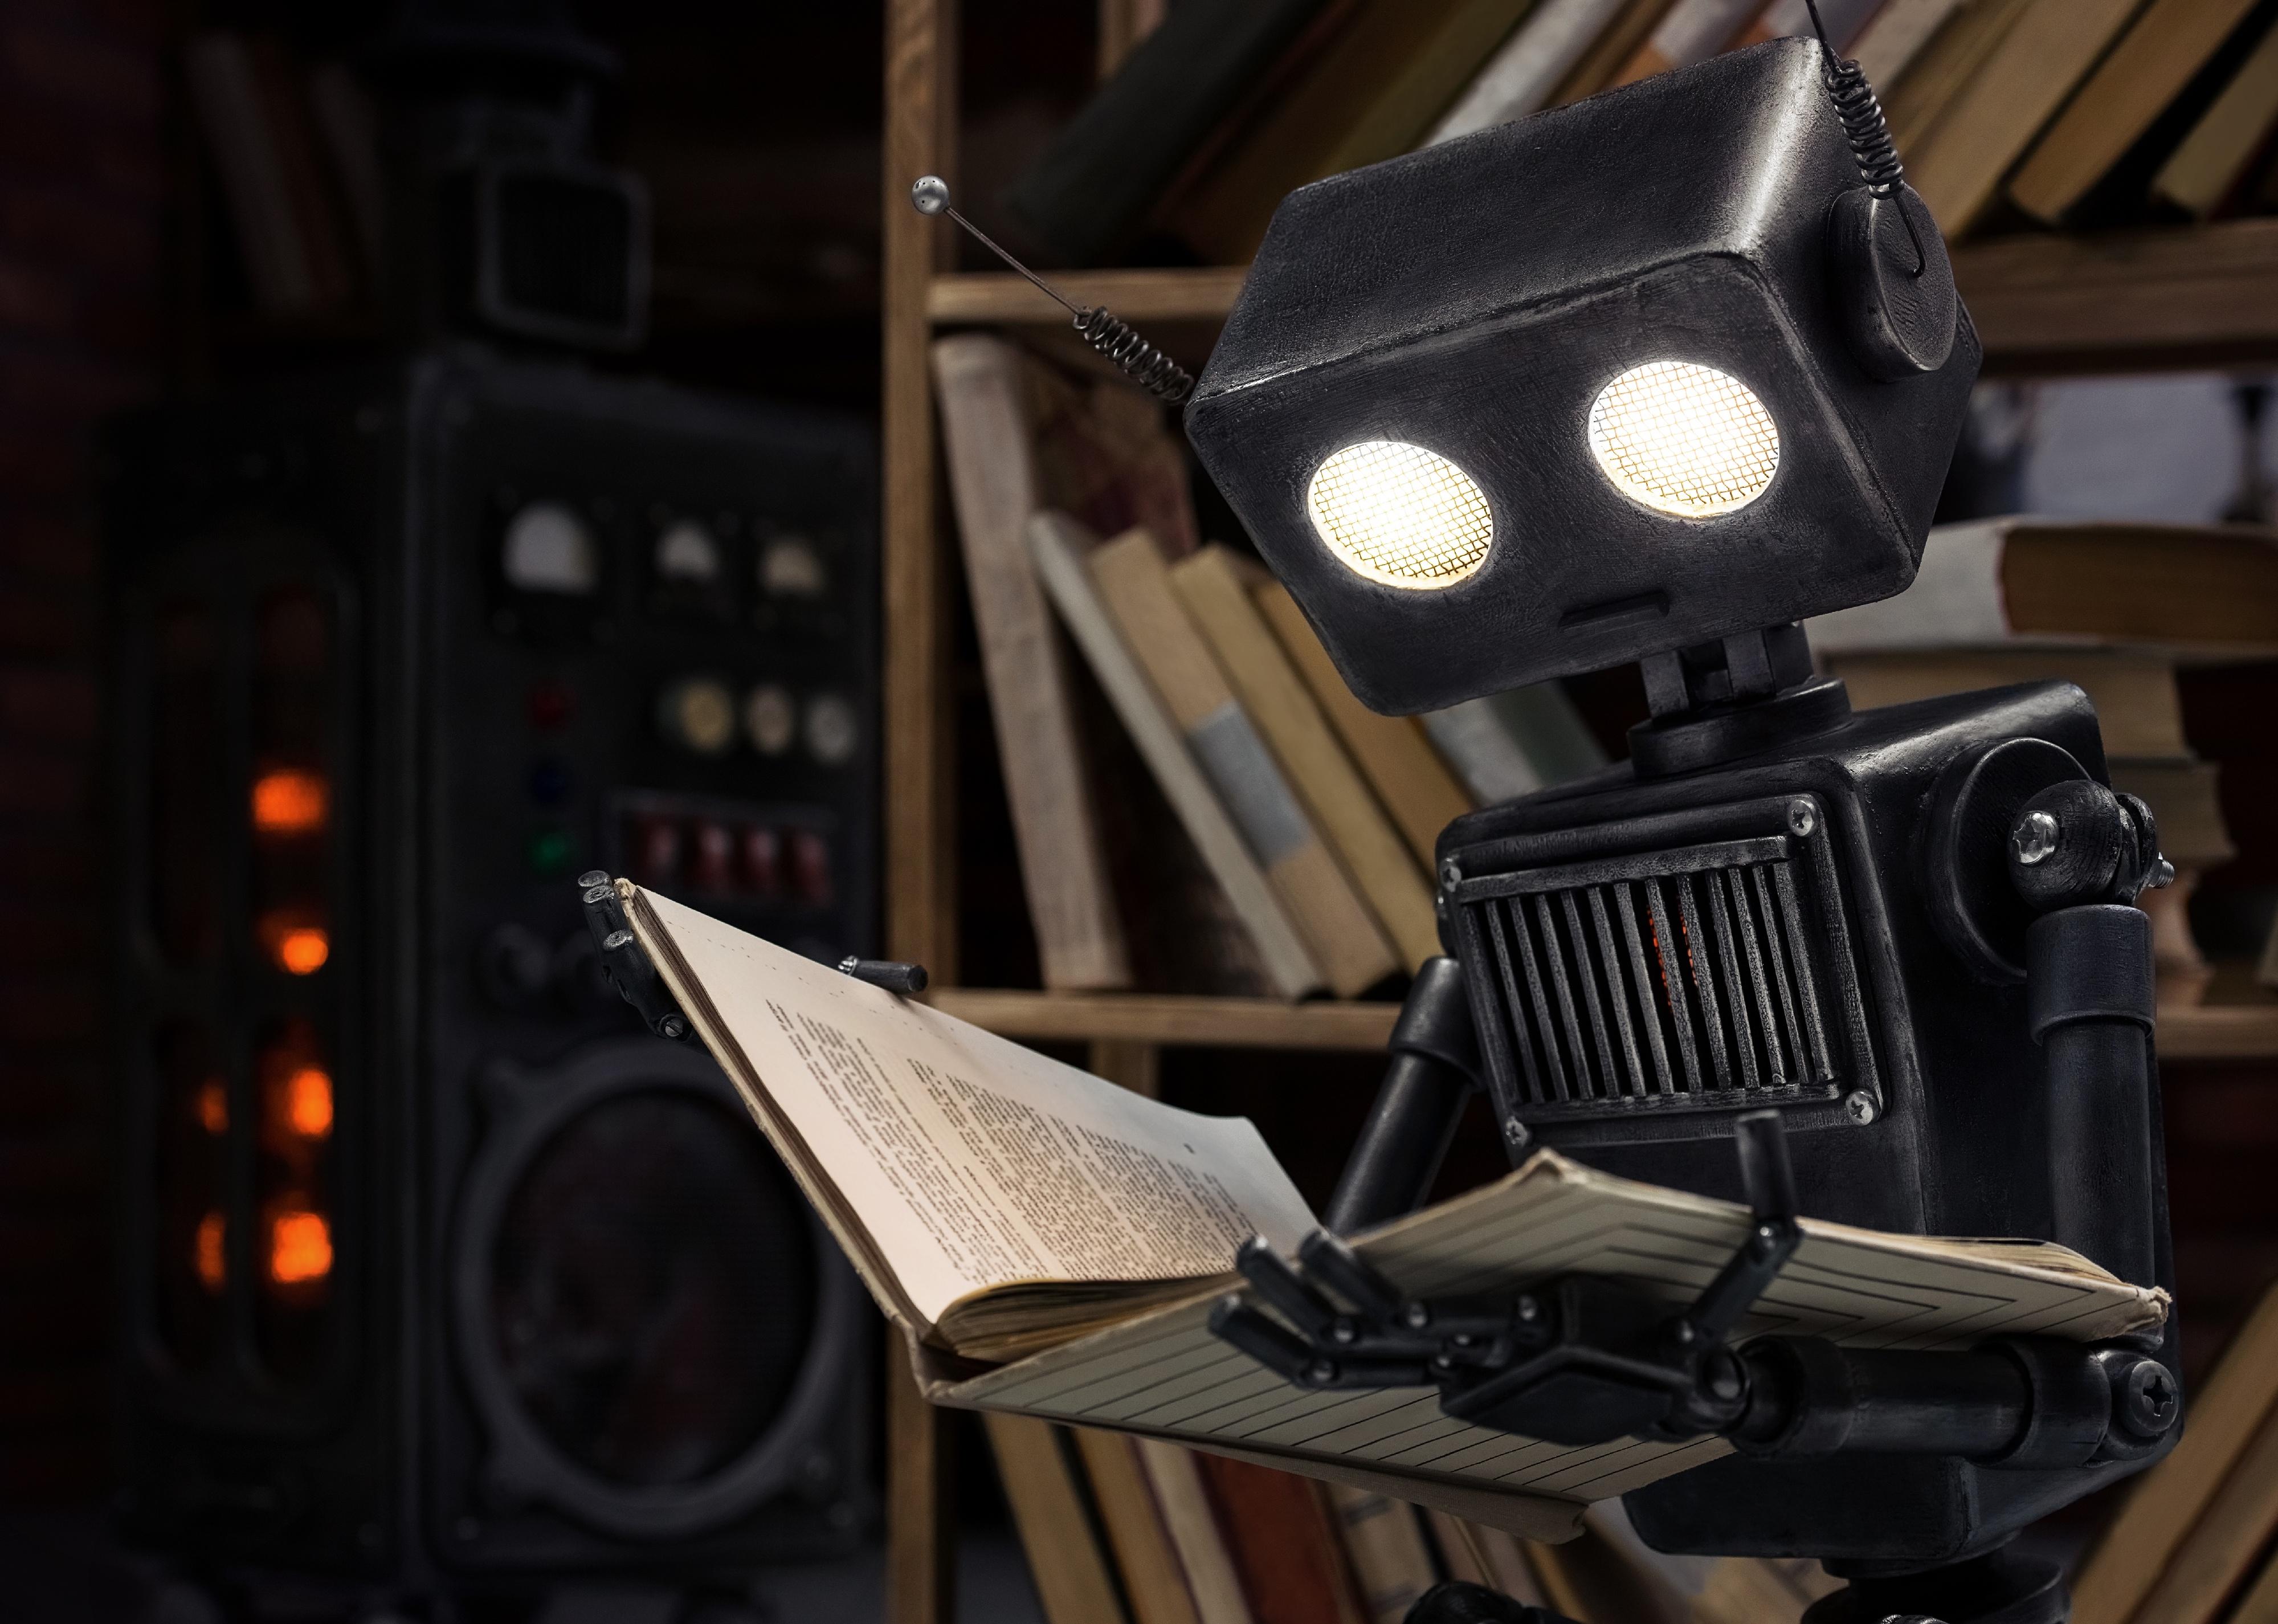 Robot reading a book. 